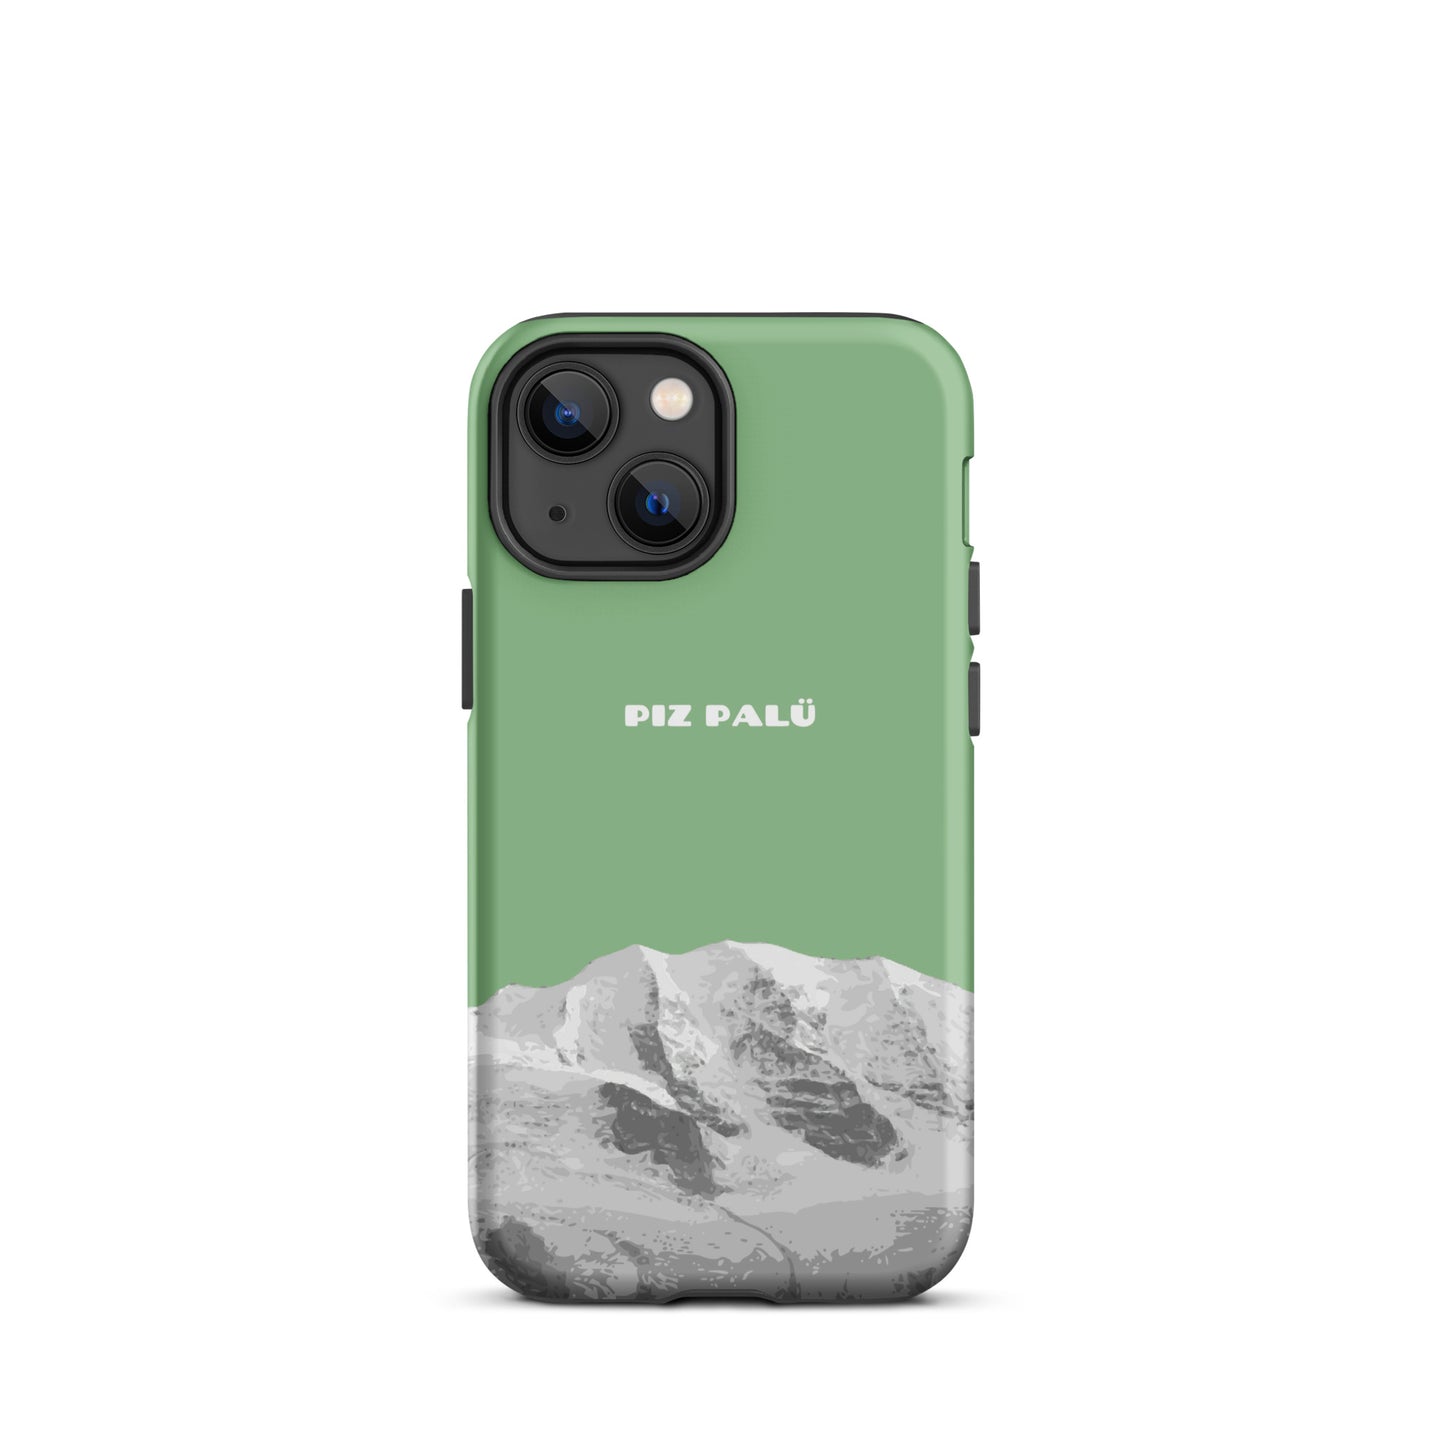 Hülle für das iPhone 13 Mini von Apple in der Farbe Hellgrün, dass den Piz Palü in Graubünden zeigt.